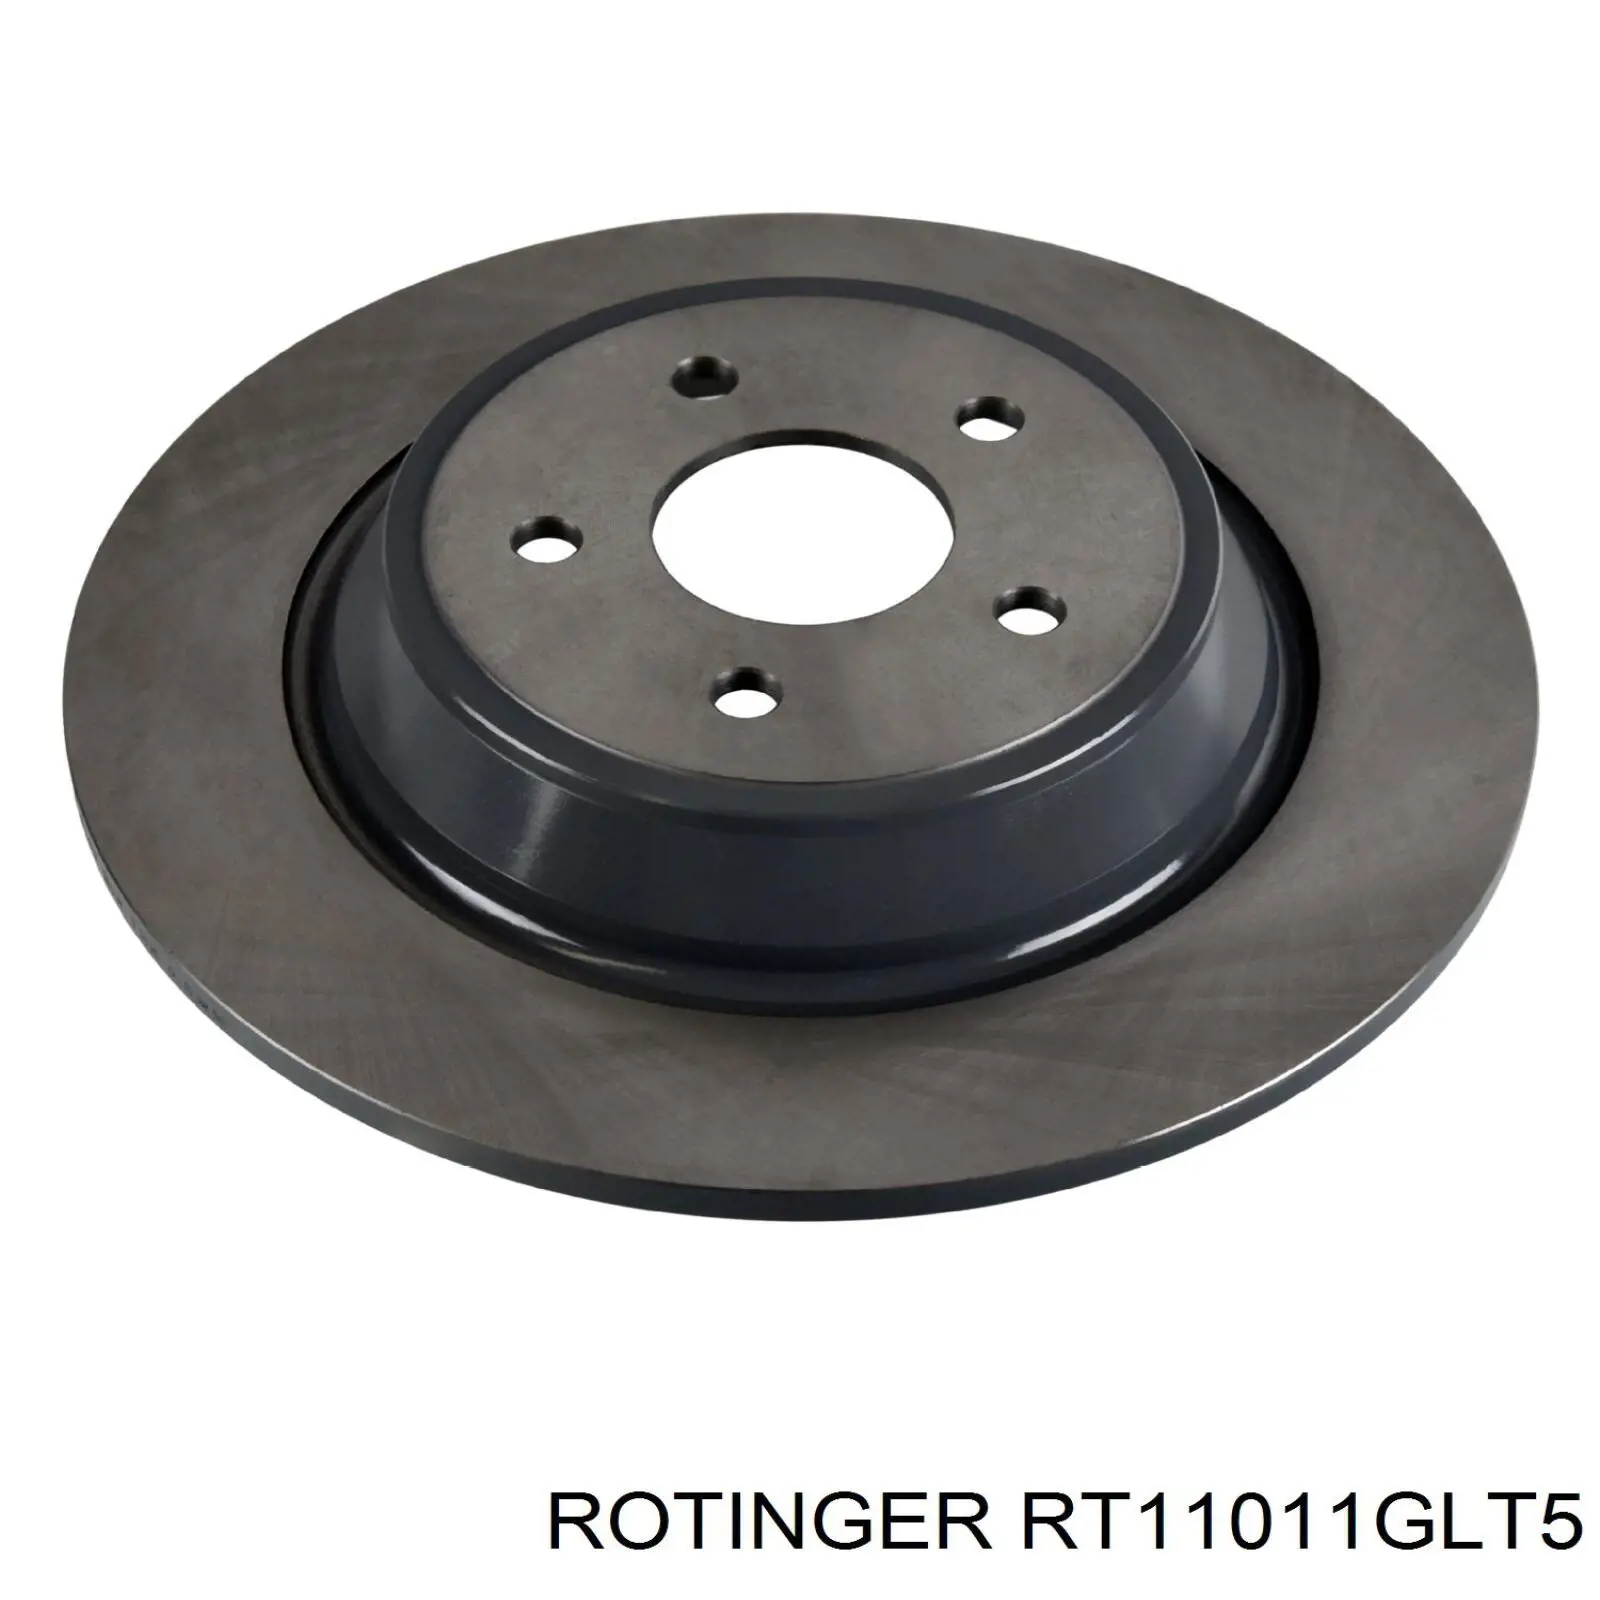 RT11011GLT5 Rotinger disco do freio traseiro